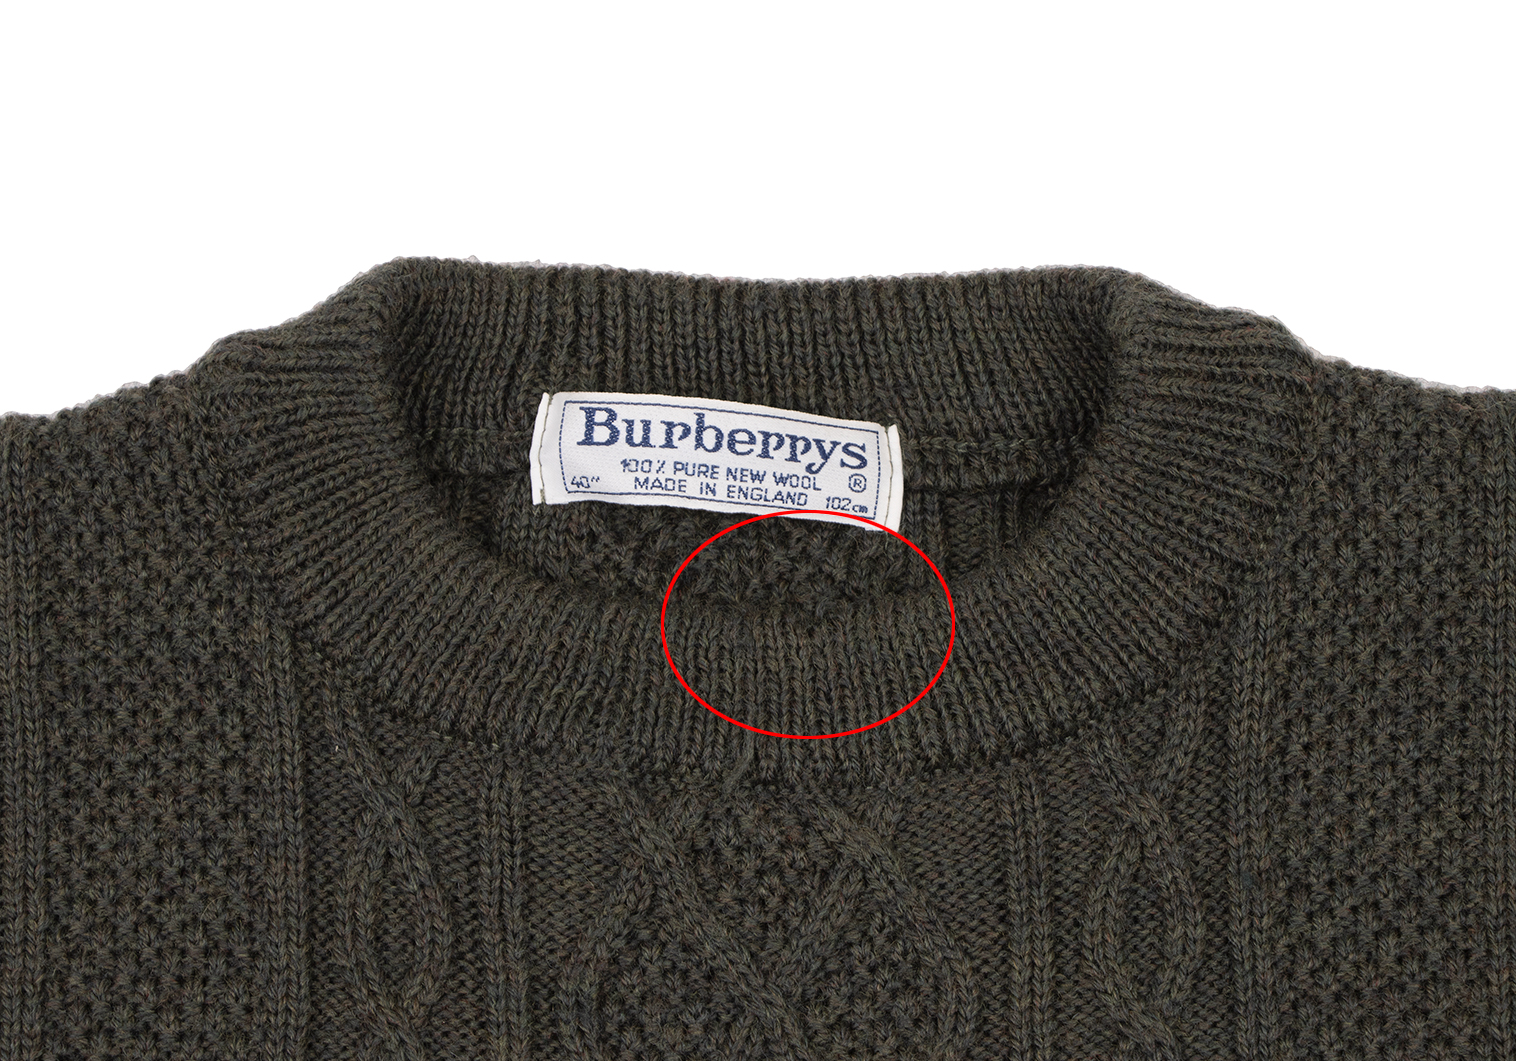 バーバリーズBurberrys' フロントロゴ刺繍ケーブルニットセーター 緑40